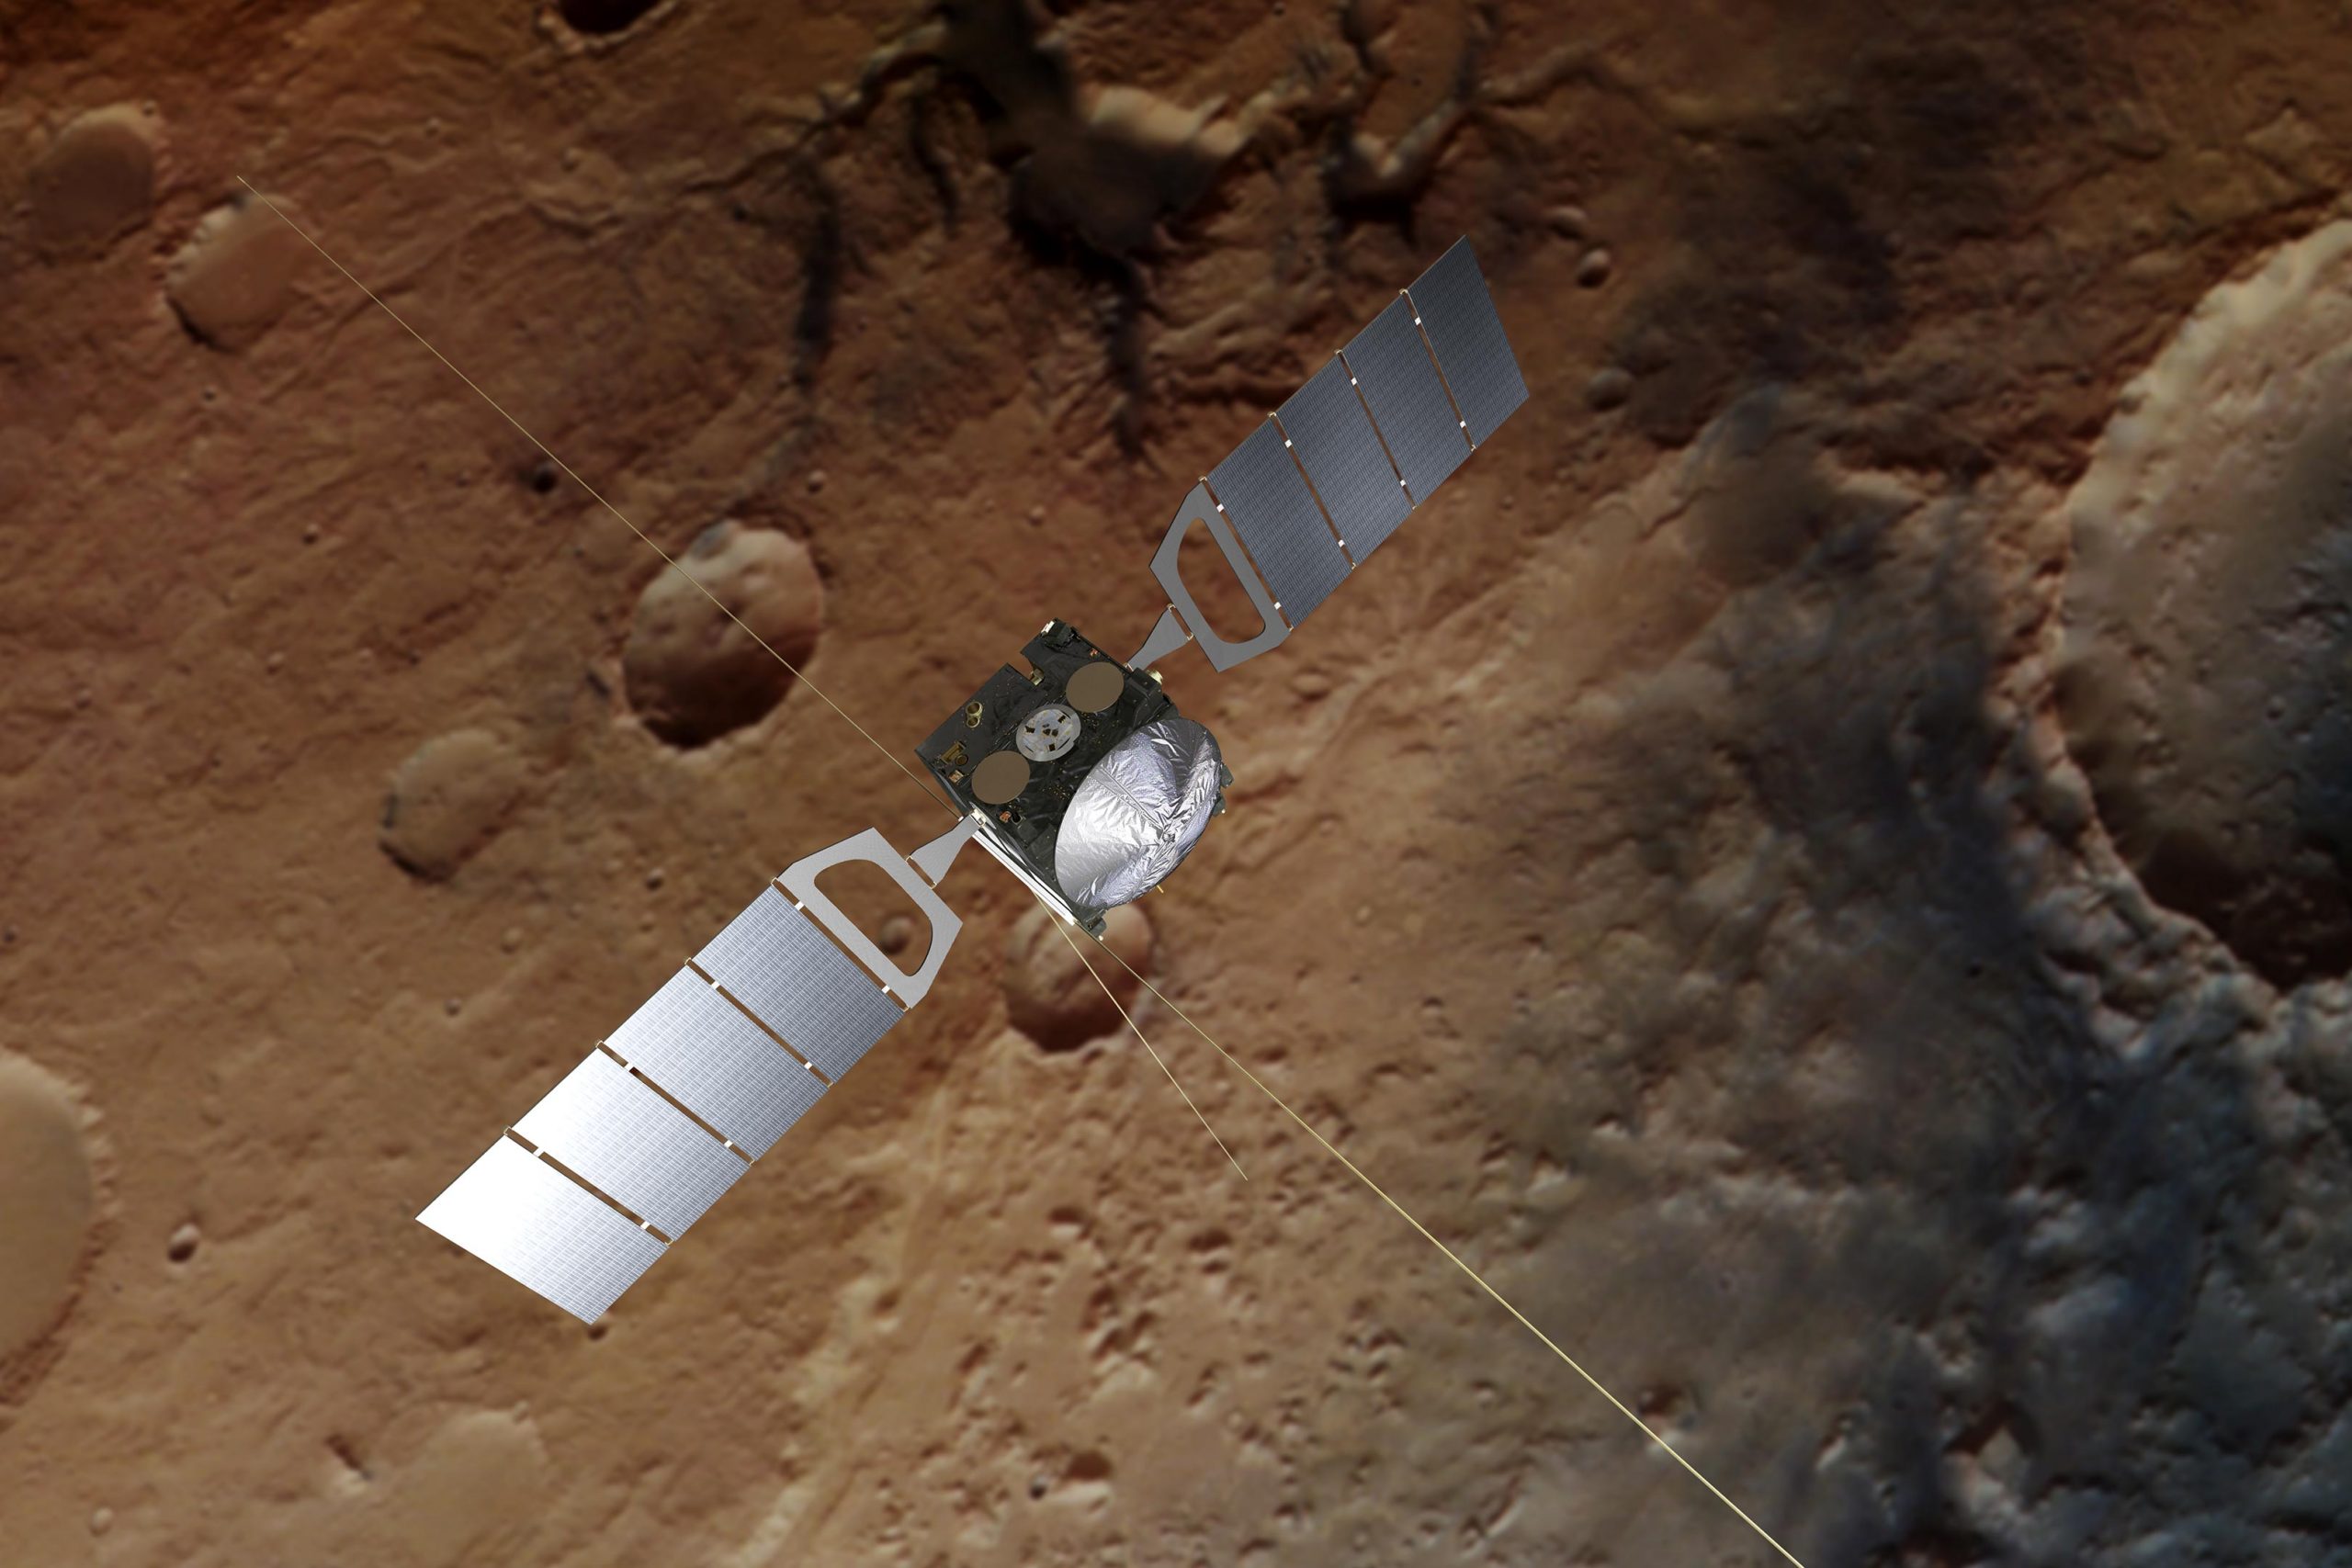 Une mise à niveau majeure pour le Martian Water Watcher de 19 ans